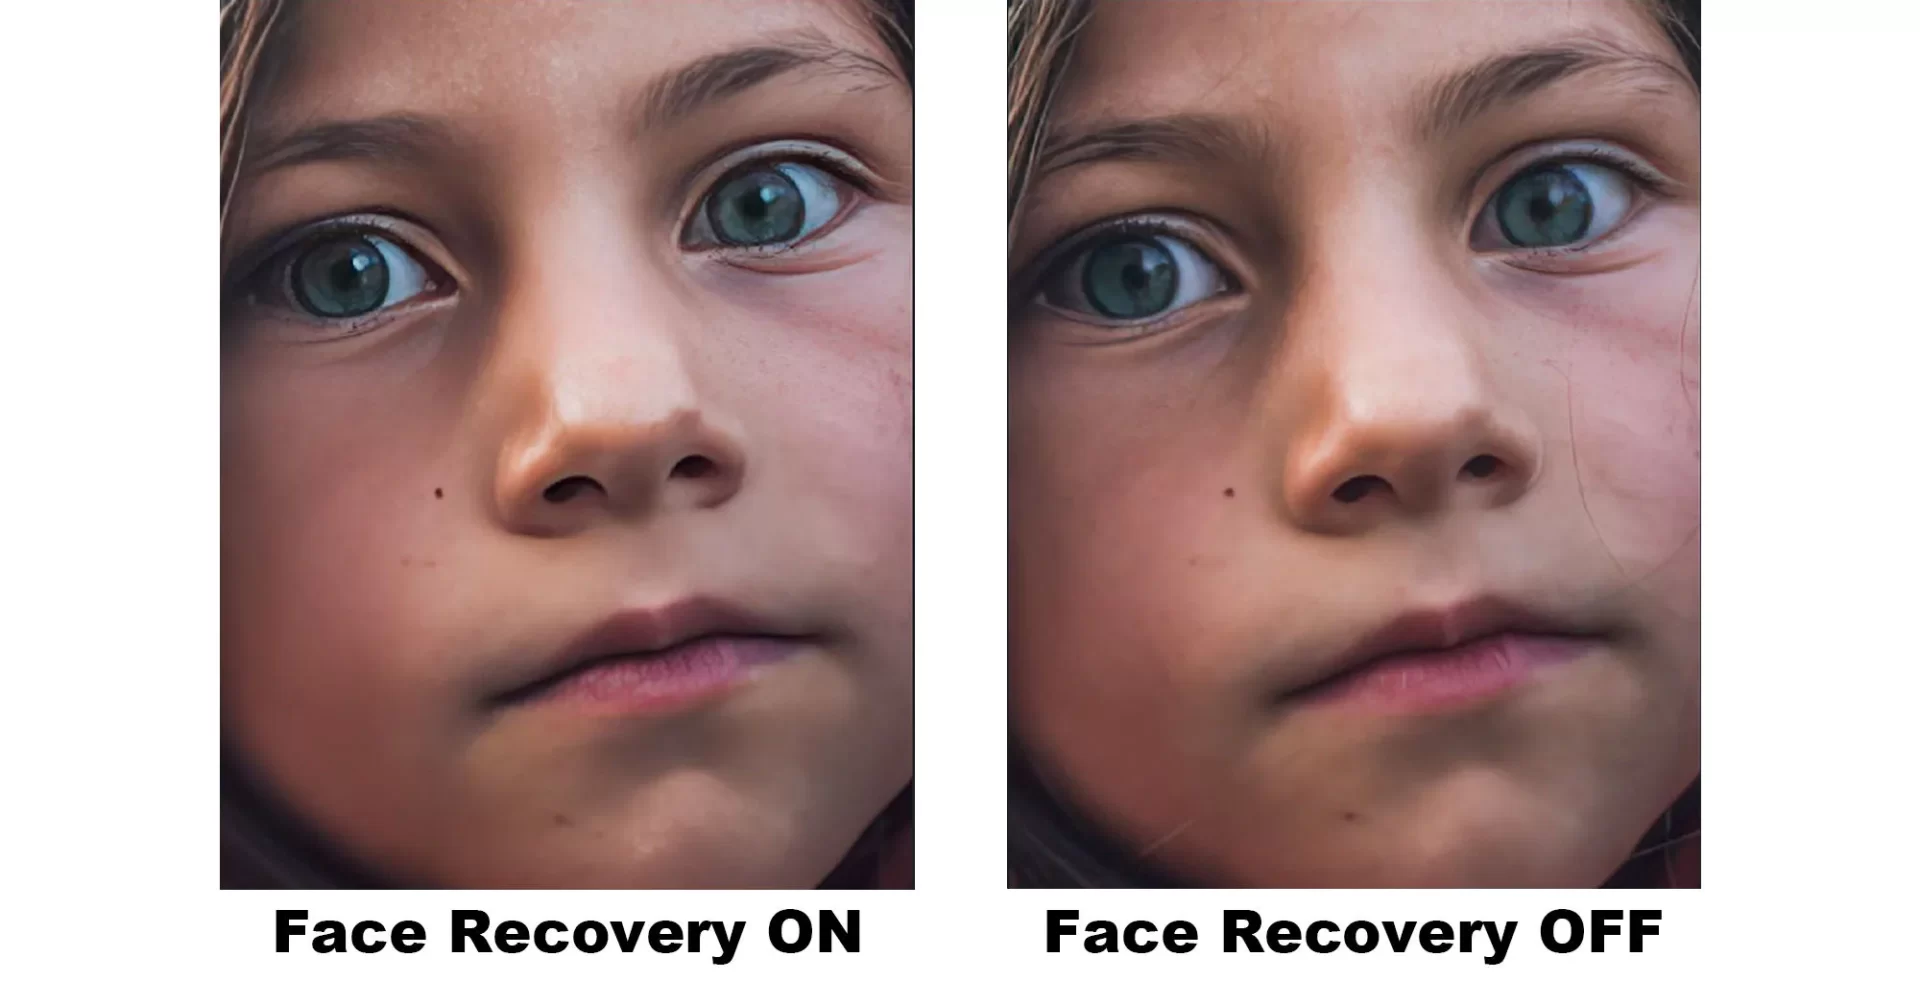 Recuperación facial fotográfica con Gigapixel - Cómo funciona el modelo de Face Recovery